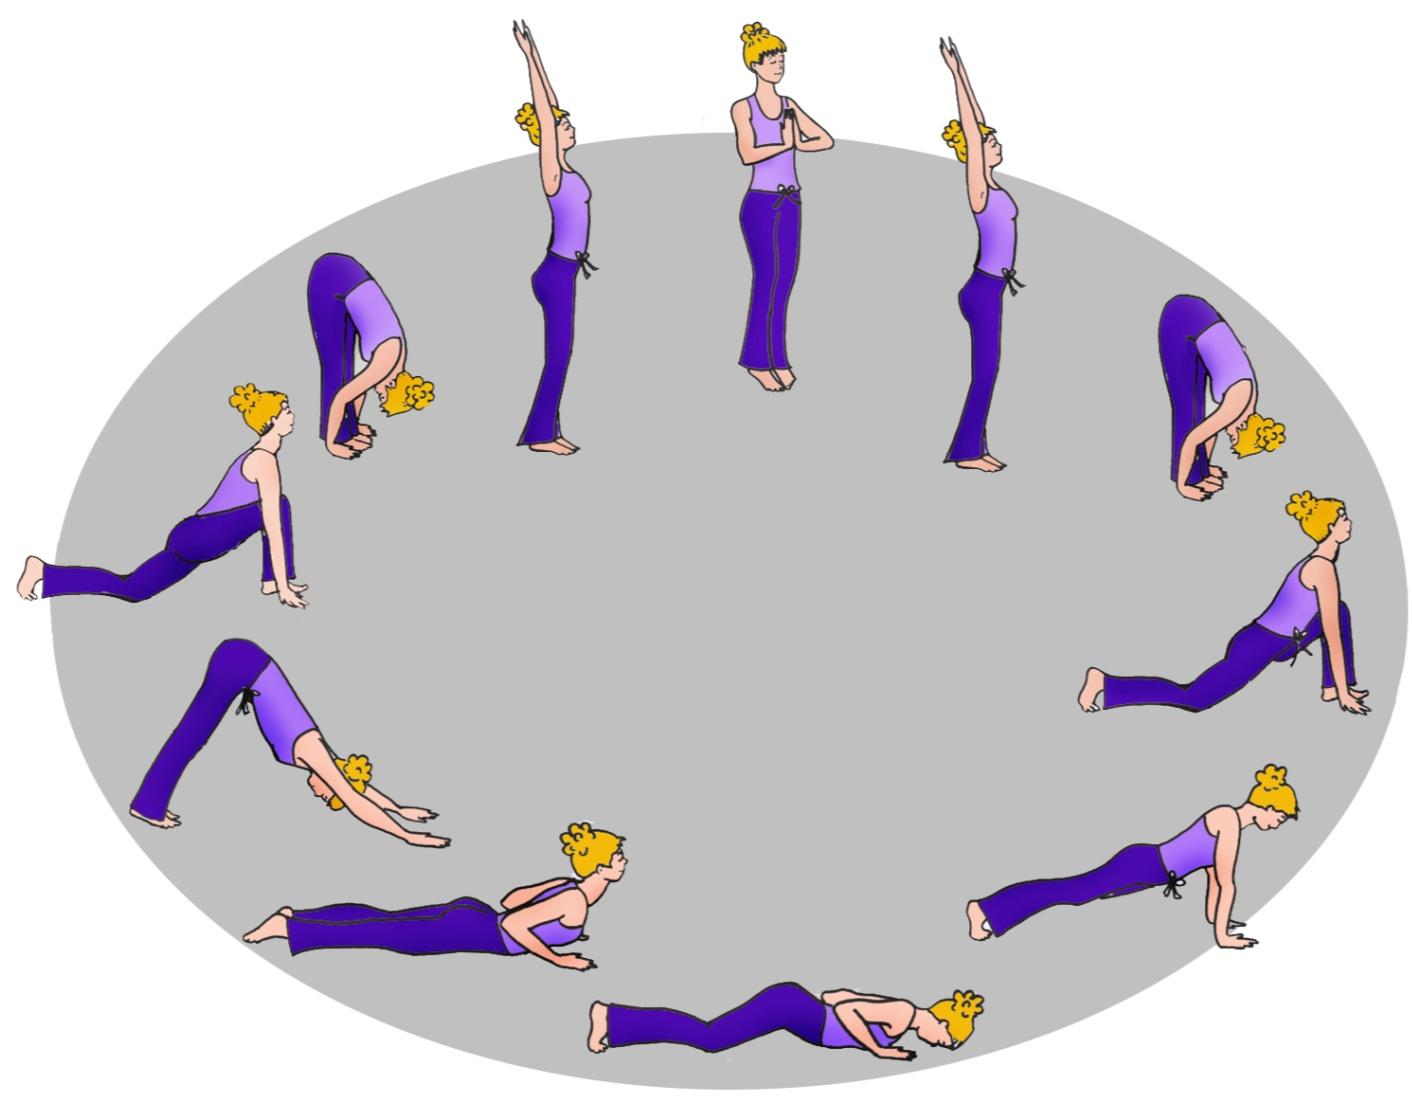 Der Sonnengruß (auch Sonnengebet) ist die bekannteste Übung aus dem Hatha-Yoga. Er besteht aus einer fließenden Abfolge von zwölf Figuren (Asanas).